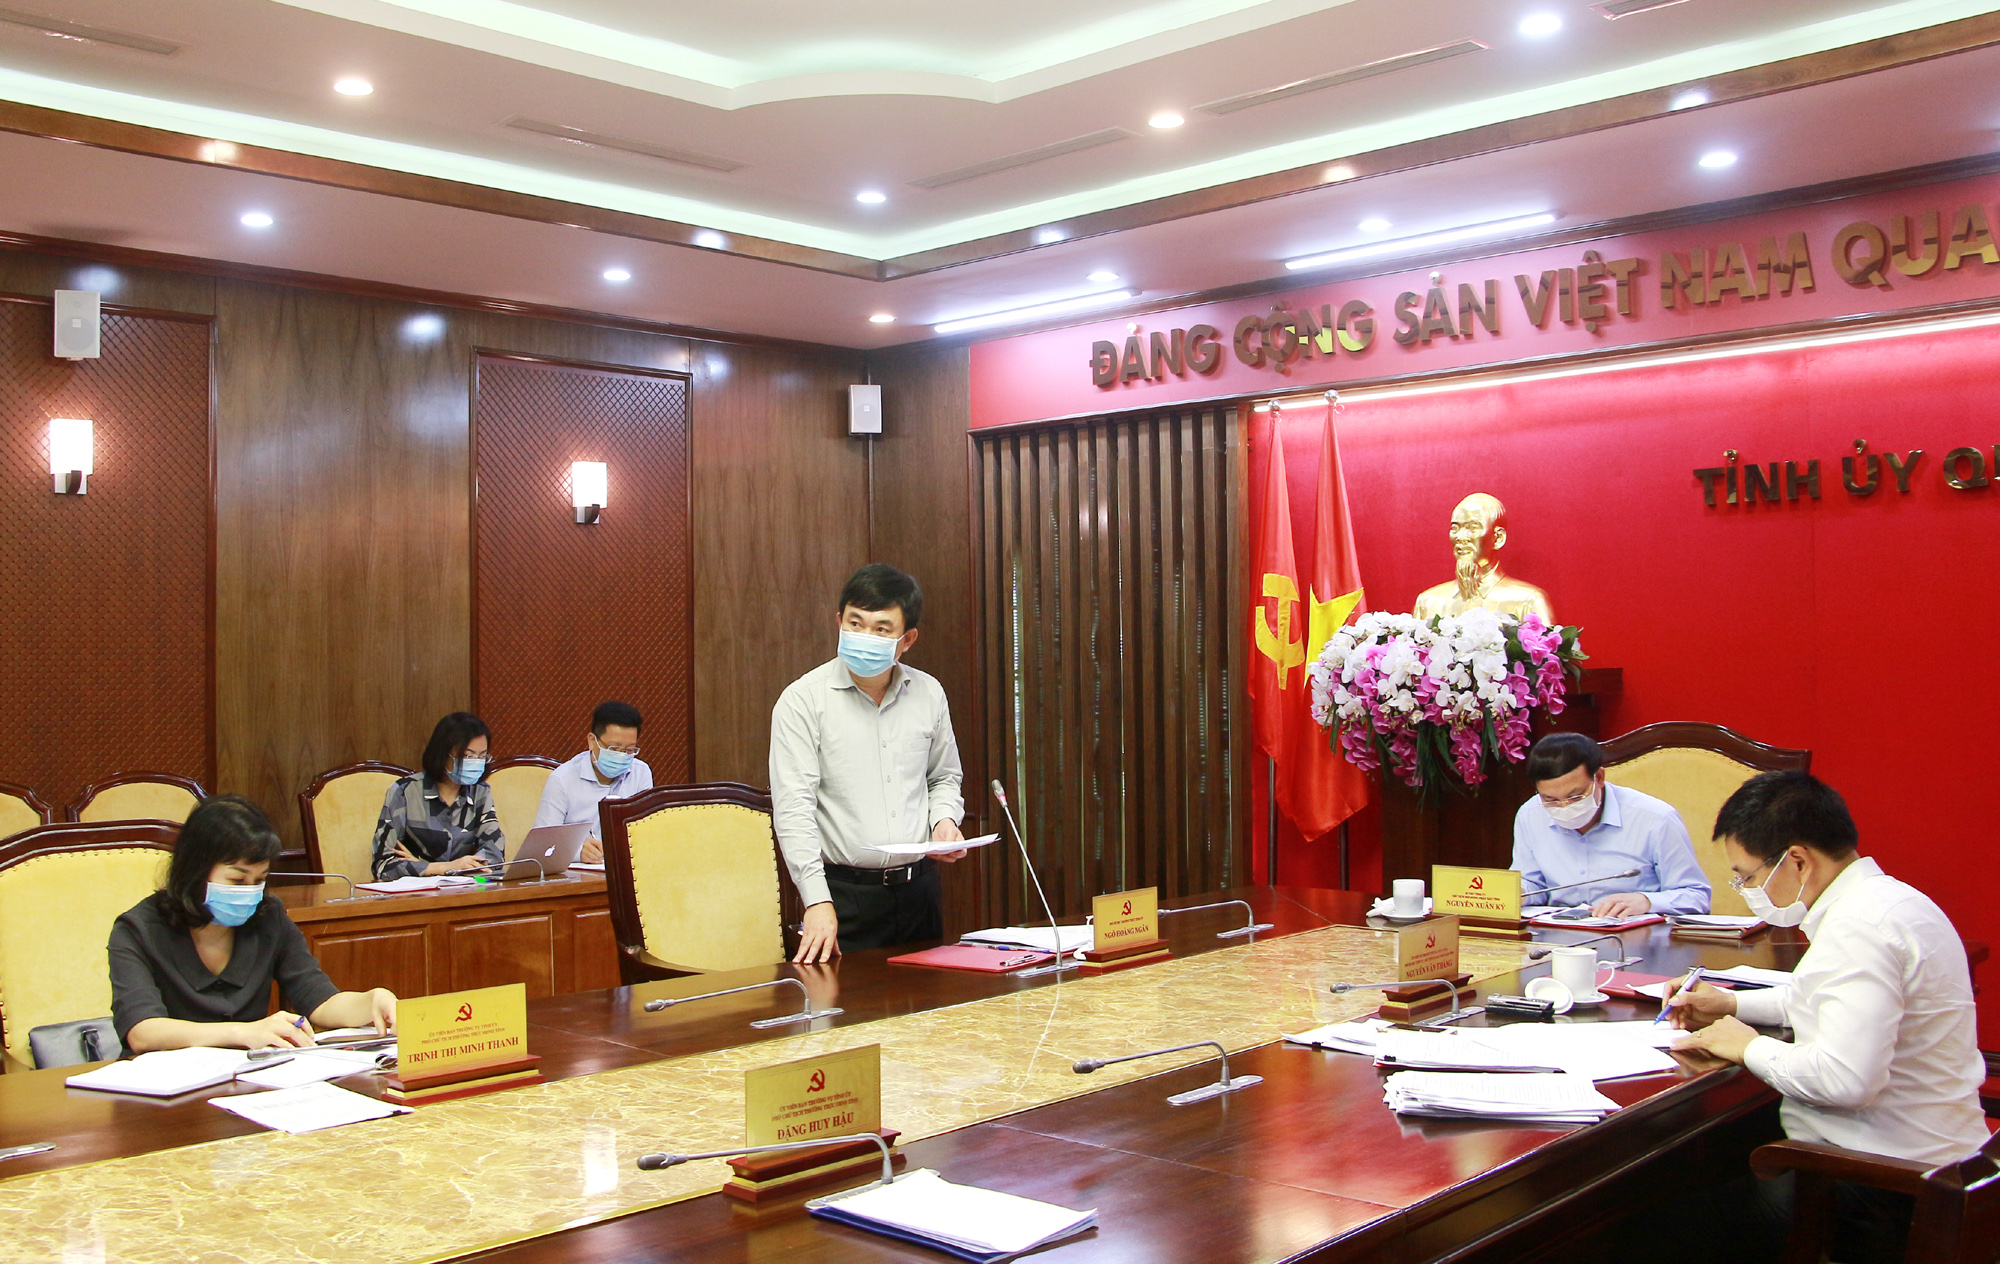 Đồng chí Ngô Hoàng Ngân, Phó Bí thư Thường trực Tỉnh ủy, phát biểu tại buổi làm việc.